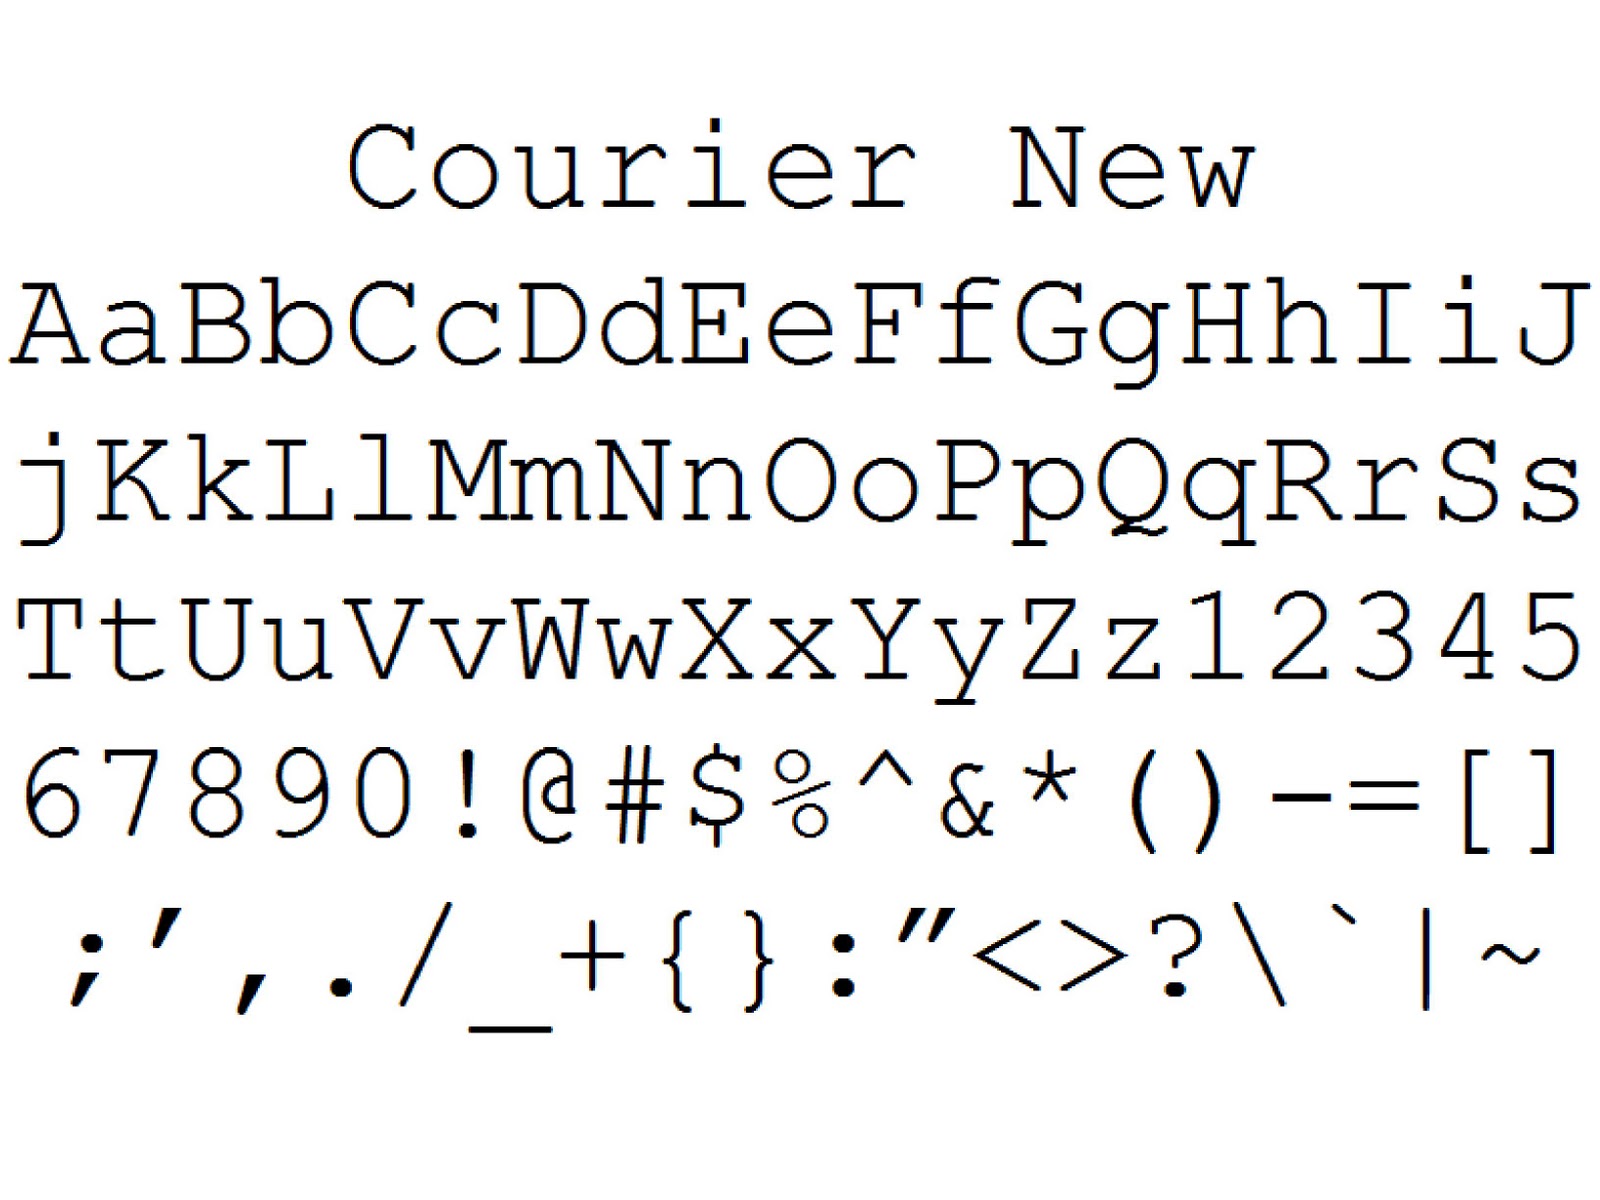 Шрифт нового документа. Courier шрифт. Courier New шрифт. Шрифт Courier русский. Компьютерный шрифт.